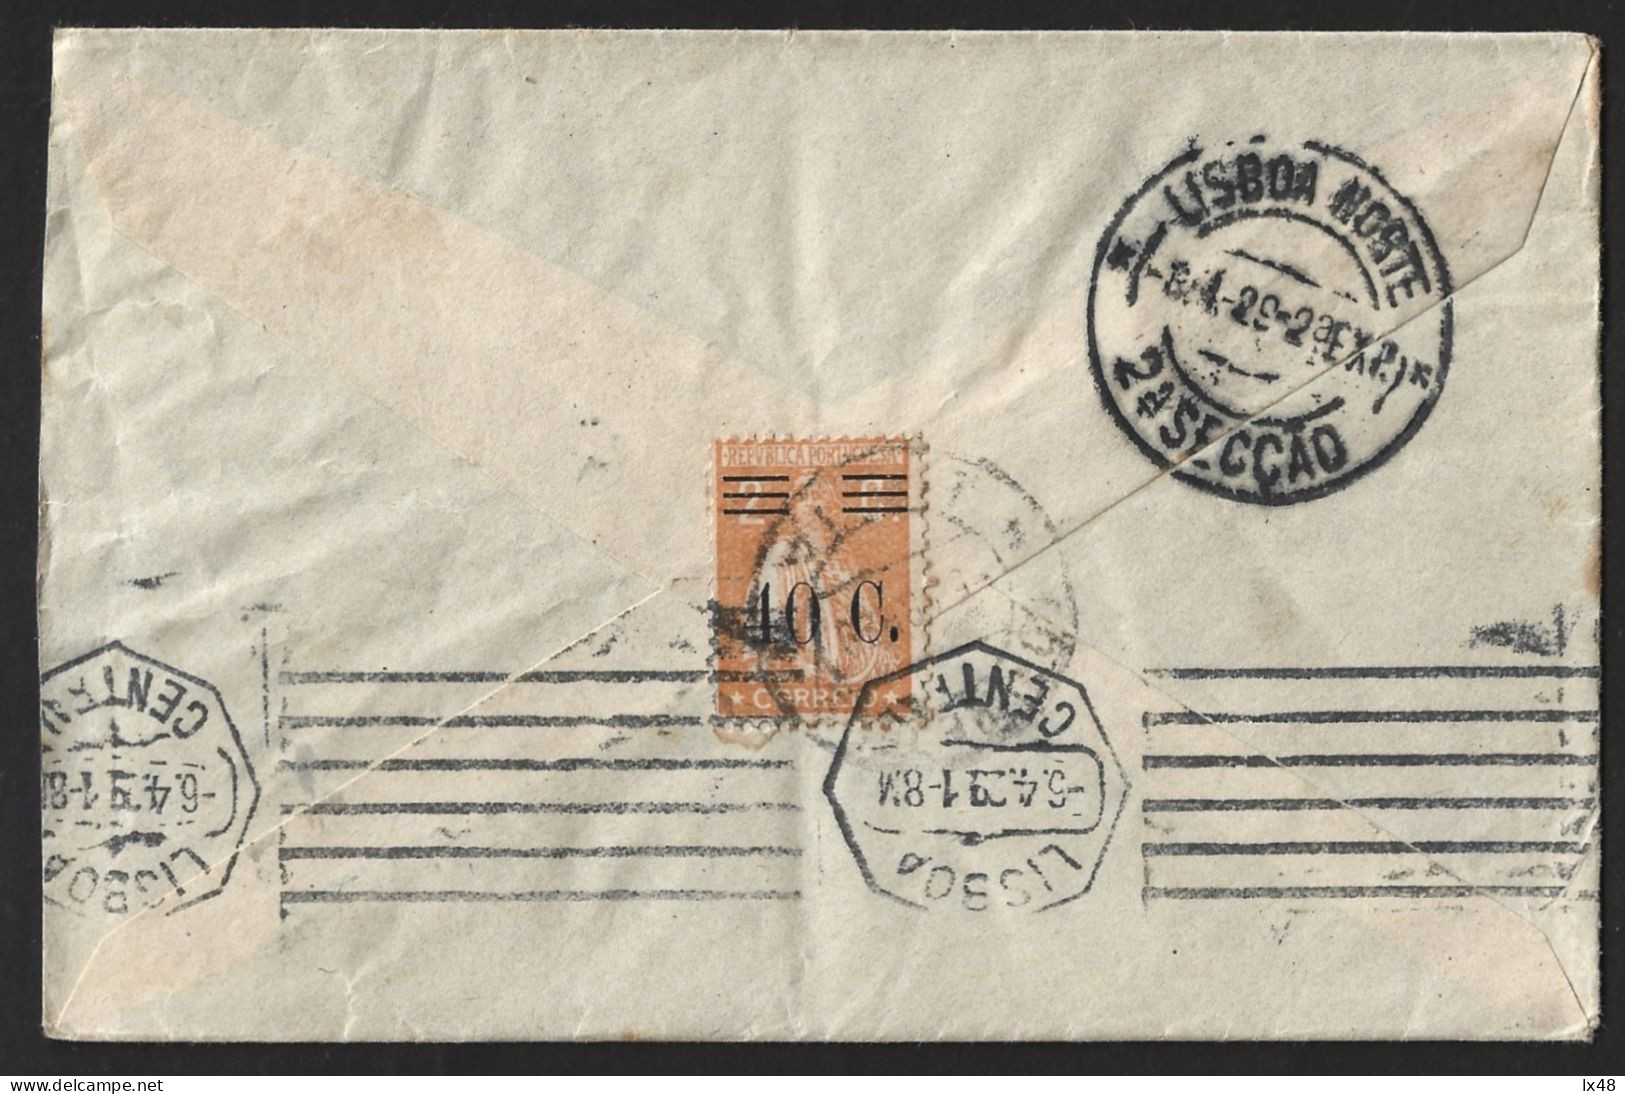 Letter Beja With Stamp 2c Ceres With 40c Surcharge. Flag Of Lines, Lisbon 1929. Carta De Beja Com Stamp 2c Ceres Com Sob - Cartas & Documentos